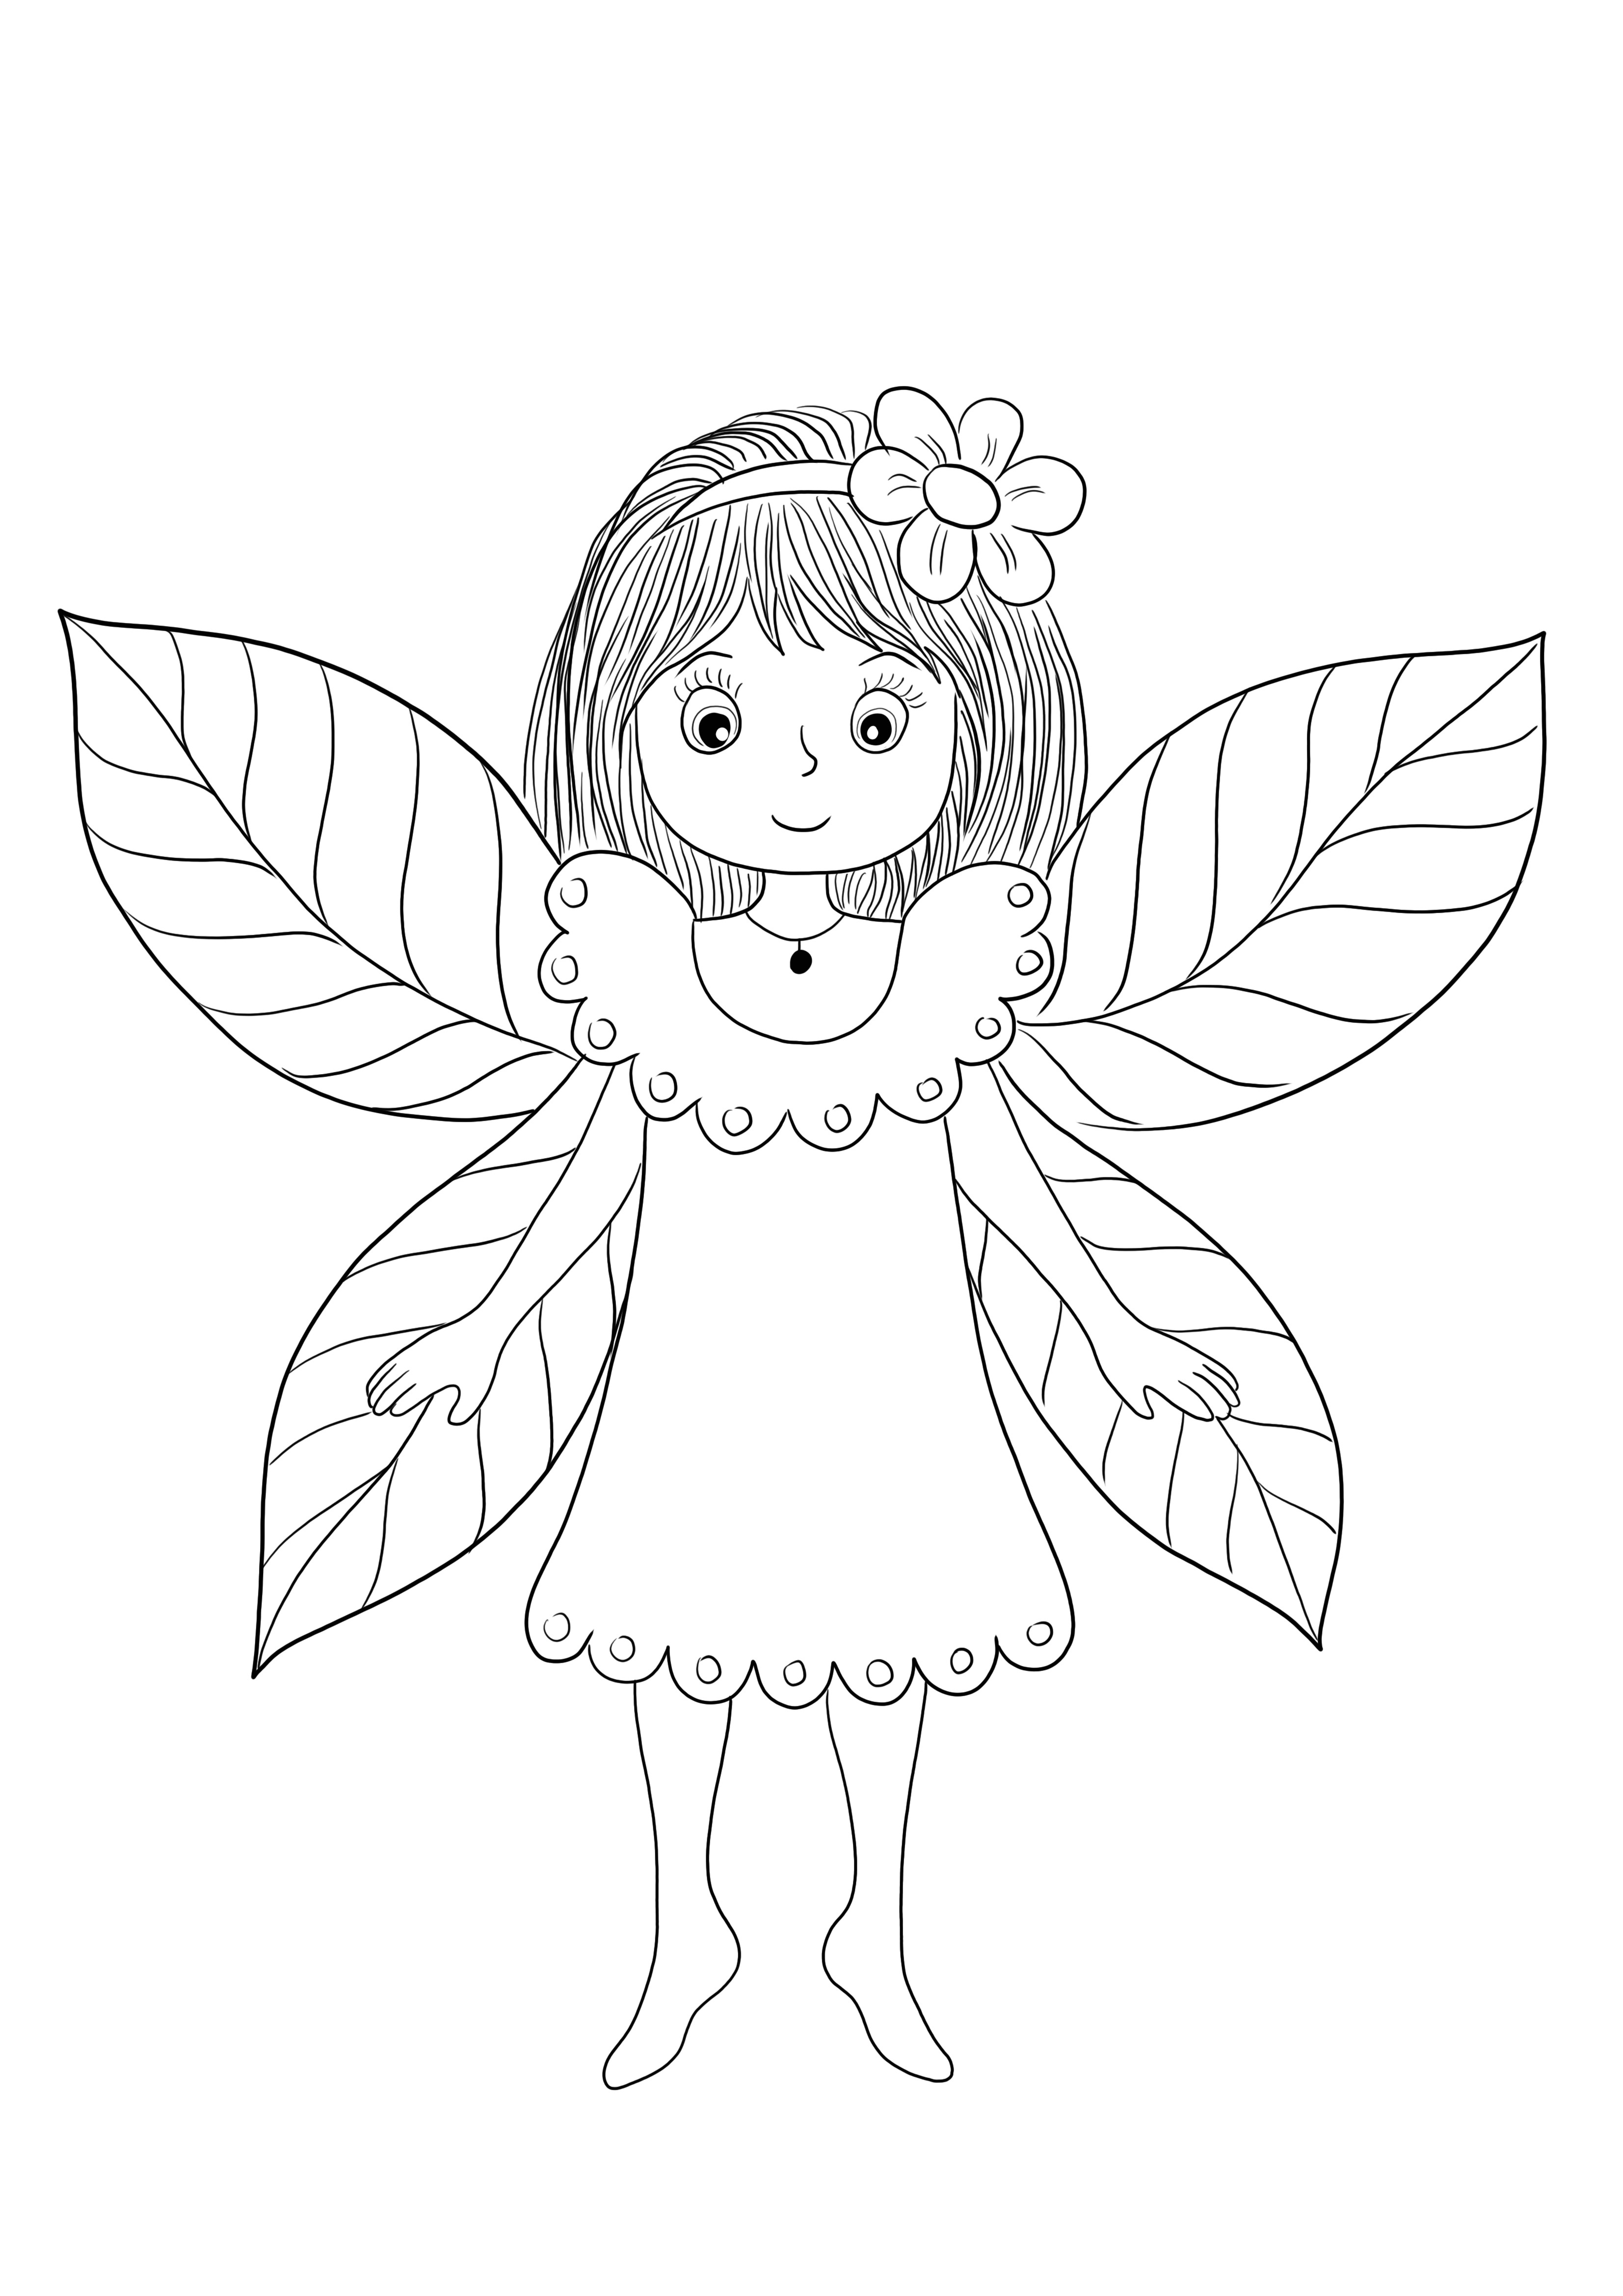 A Fairy with wings készen áll és szabadon nyomtatható és színes képpel